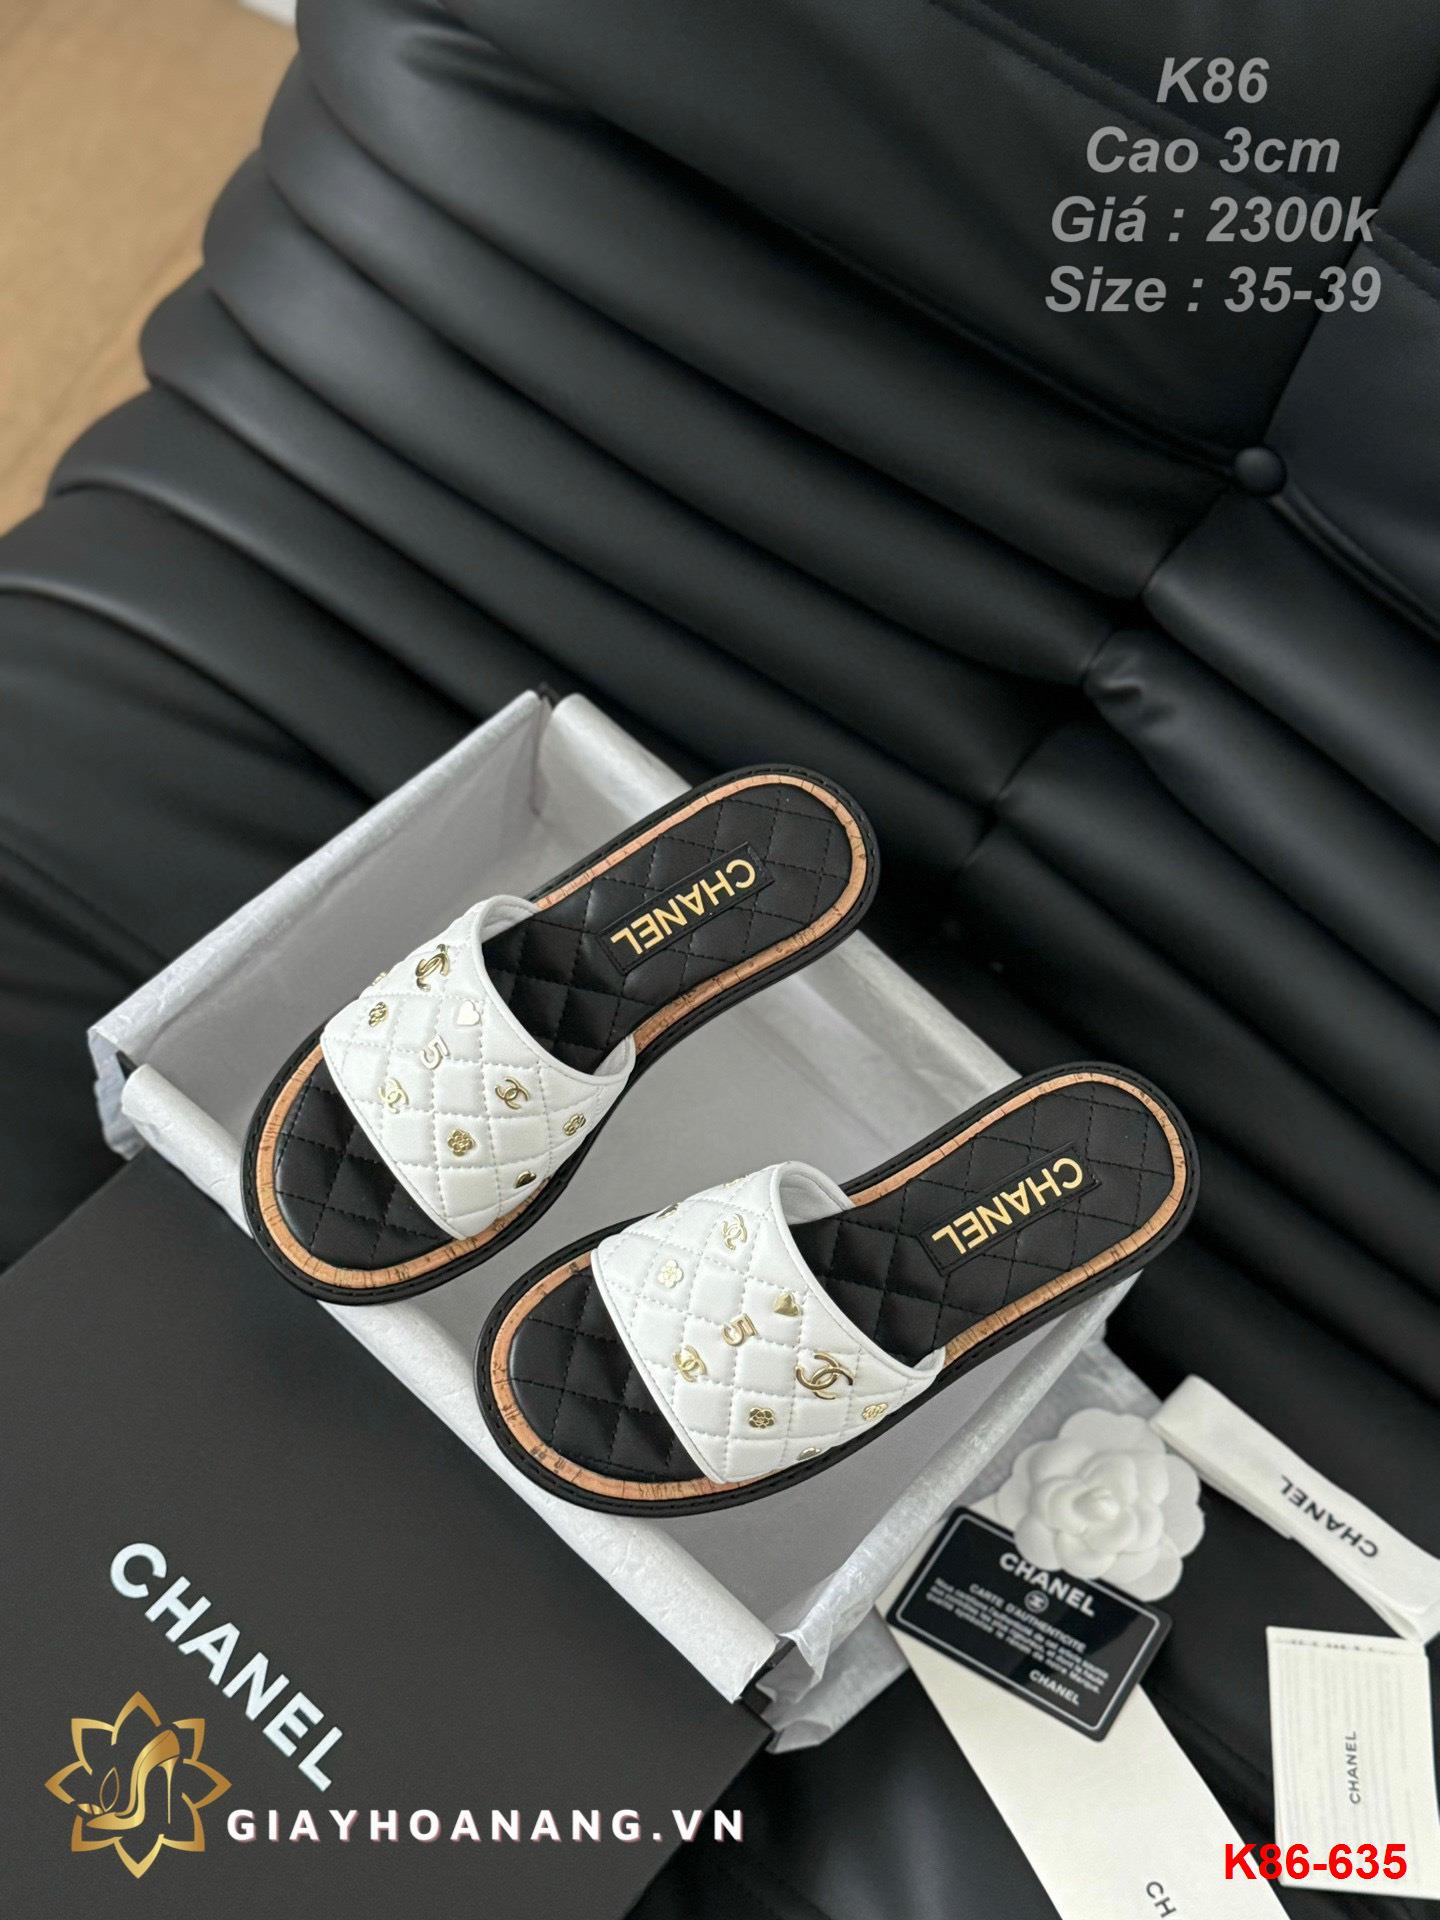 K86-635 Chanel dép cao gót 3cm siêu cấp